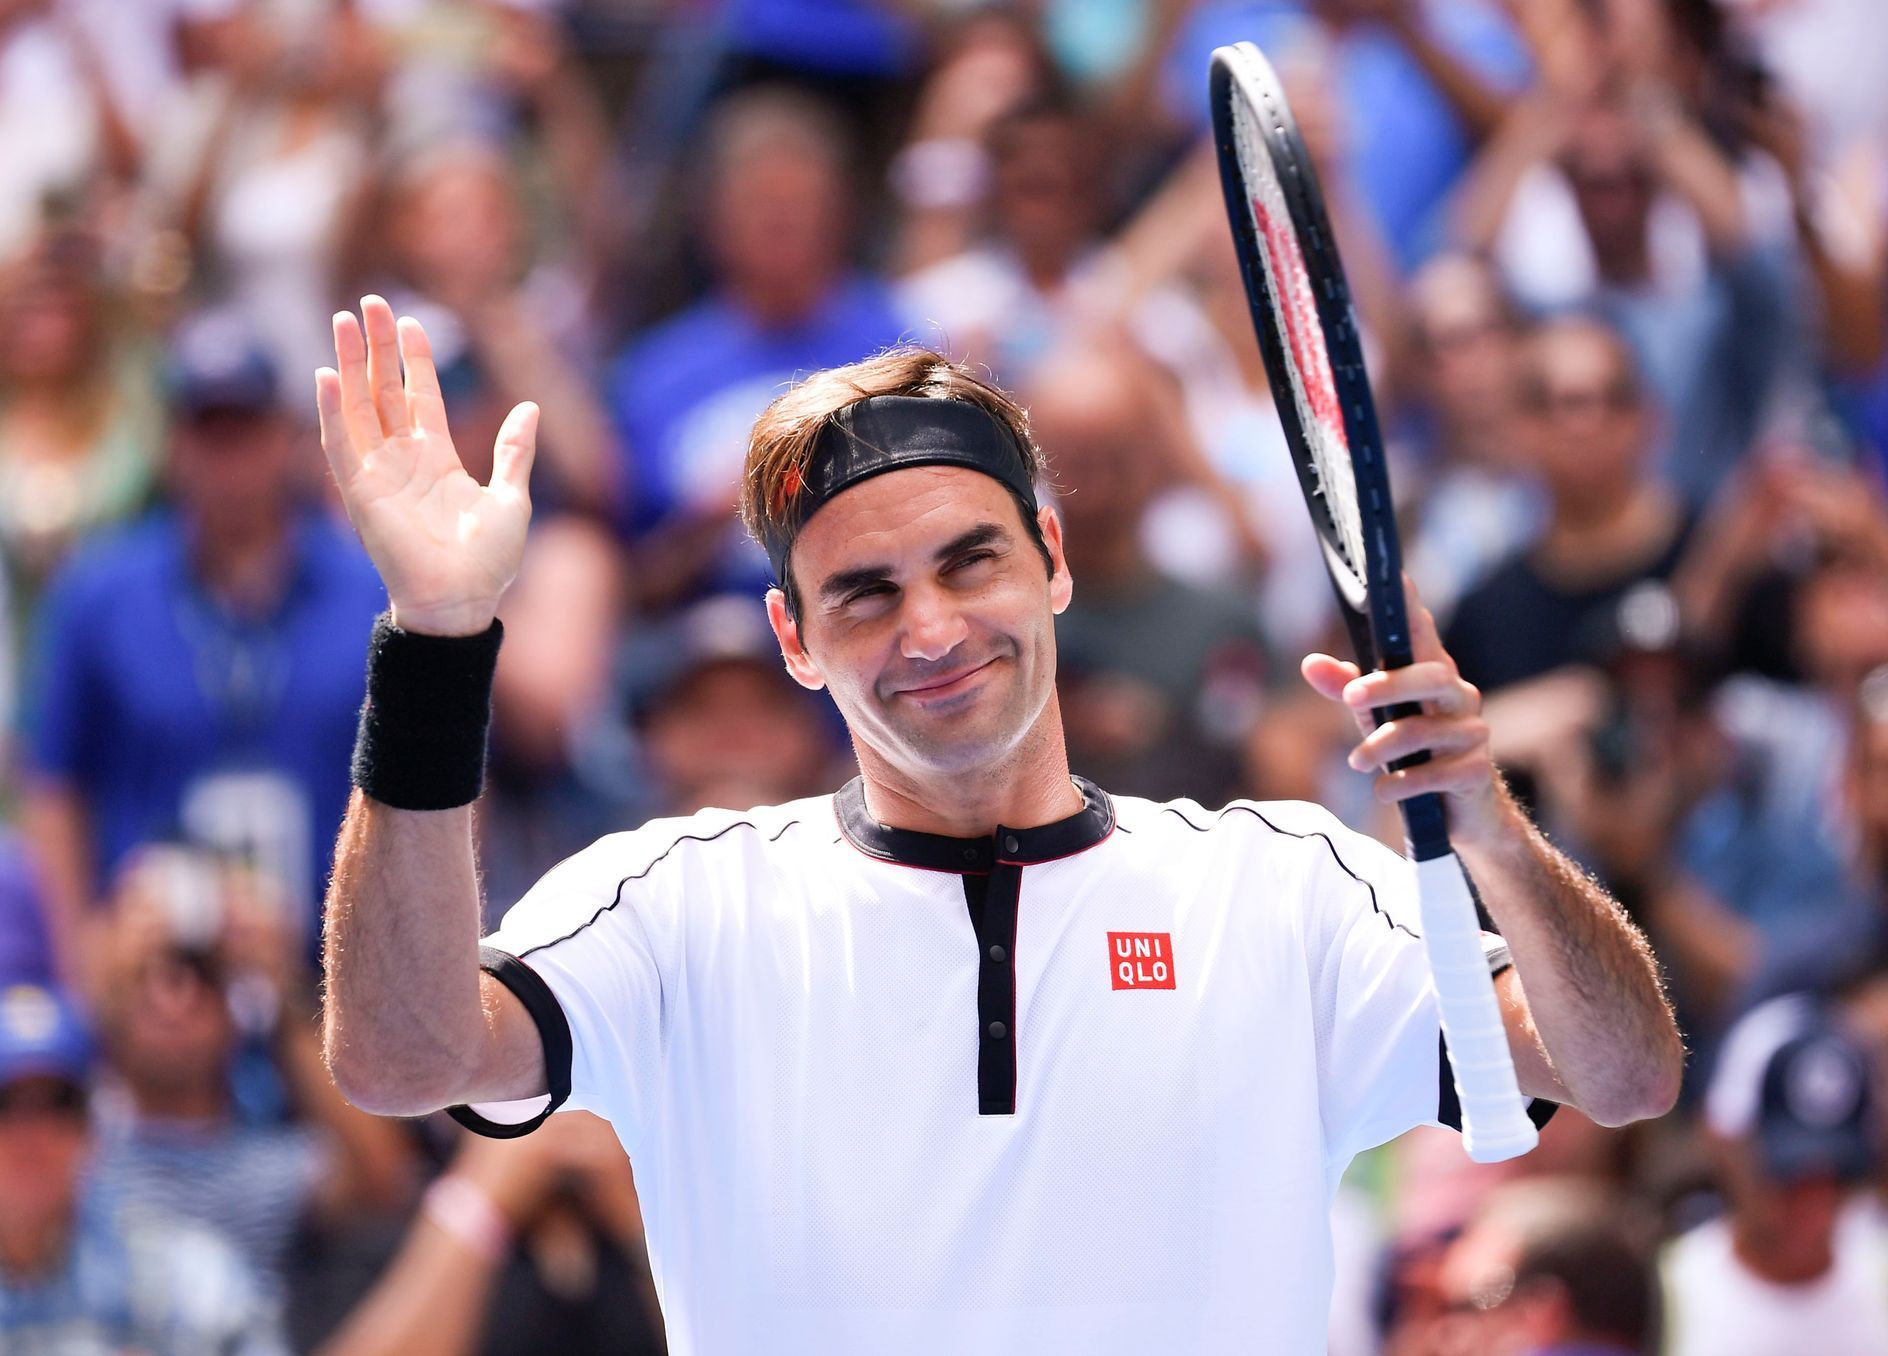 Roger Federer, US Open 2019